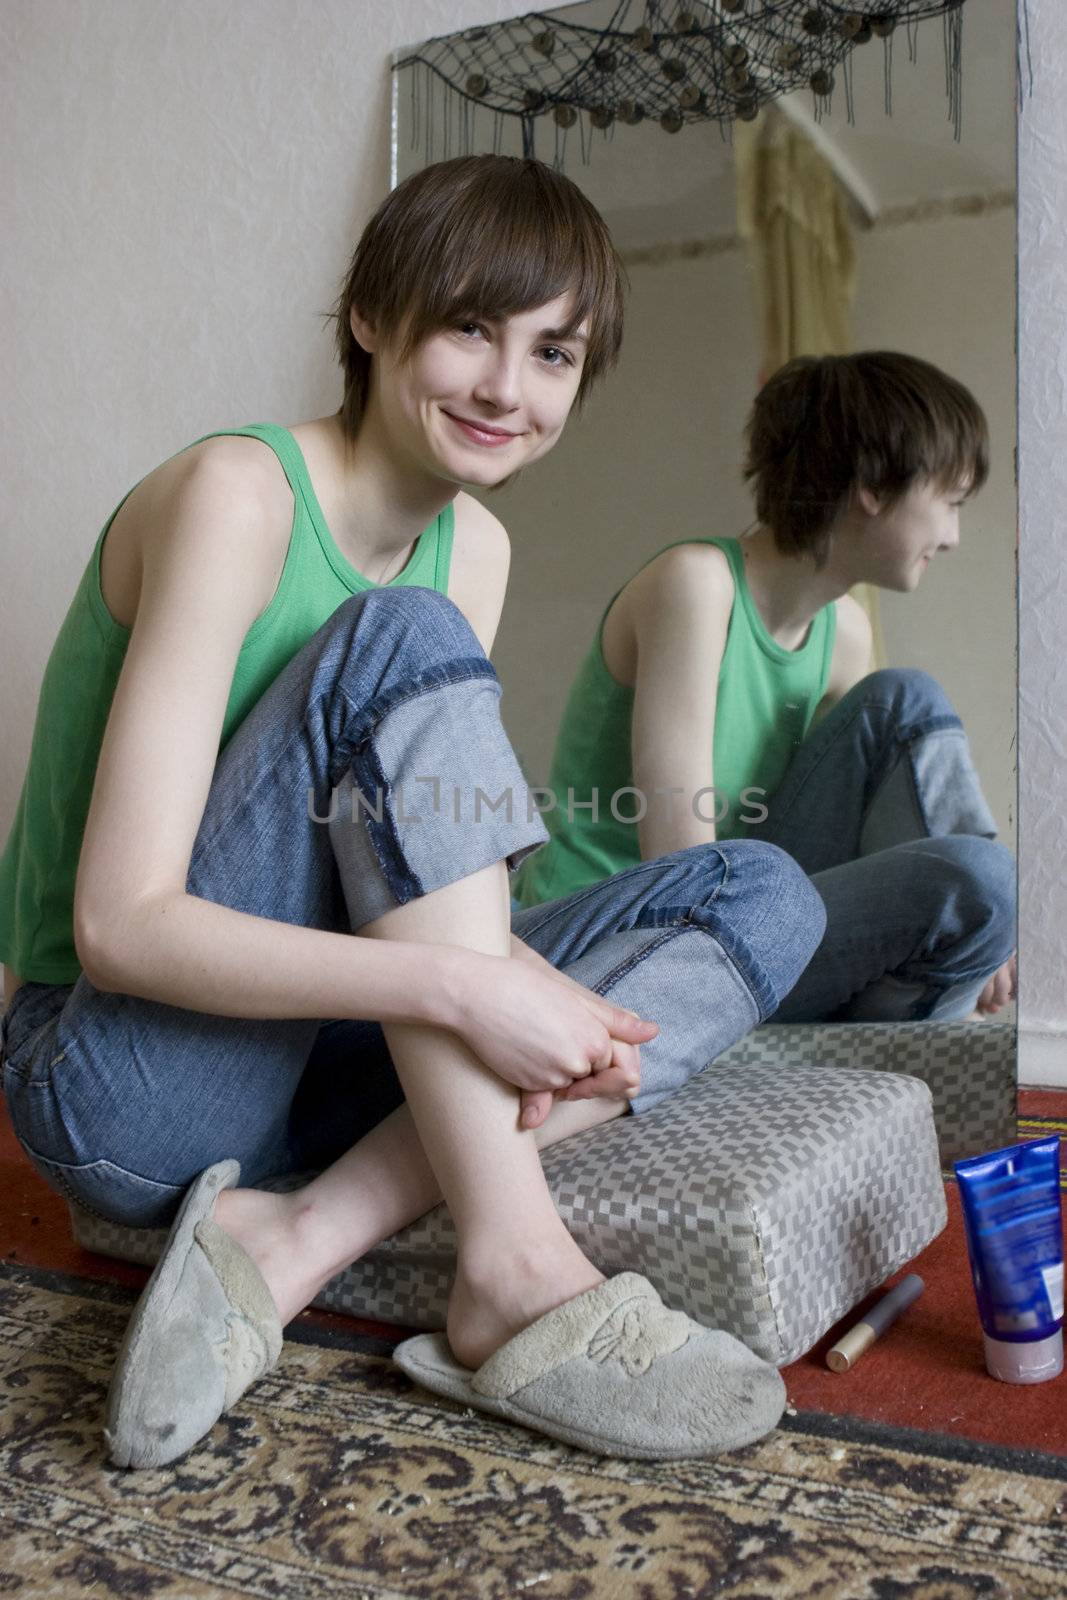 young smiling teen gir sitting at mirrow and l looking at camera